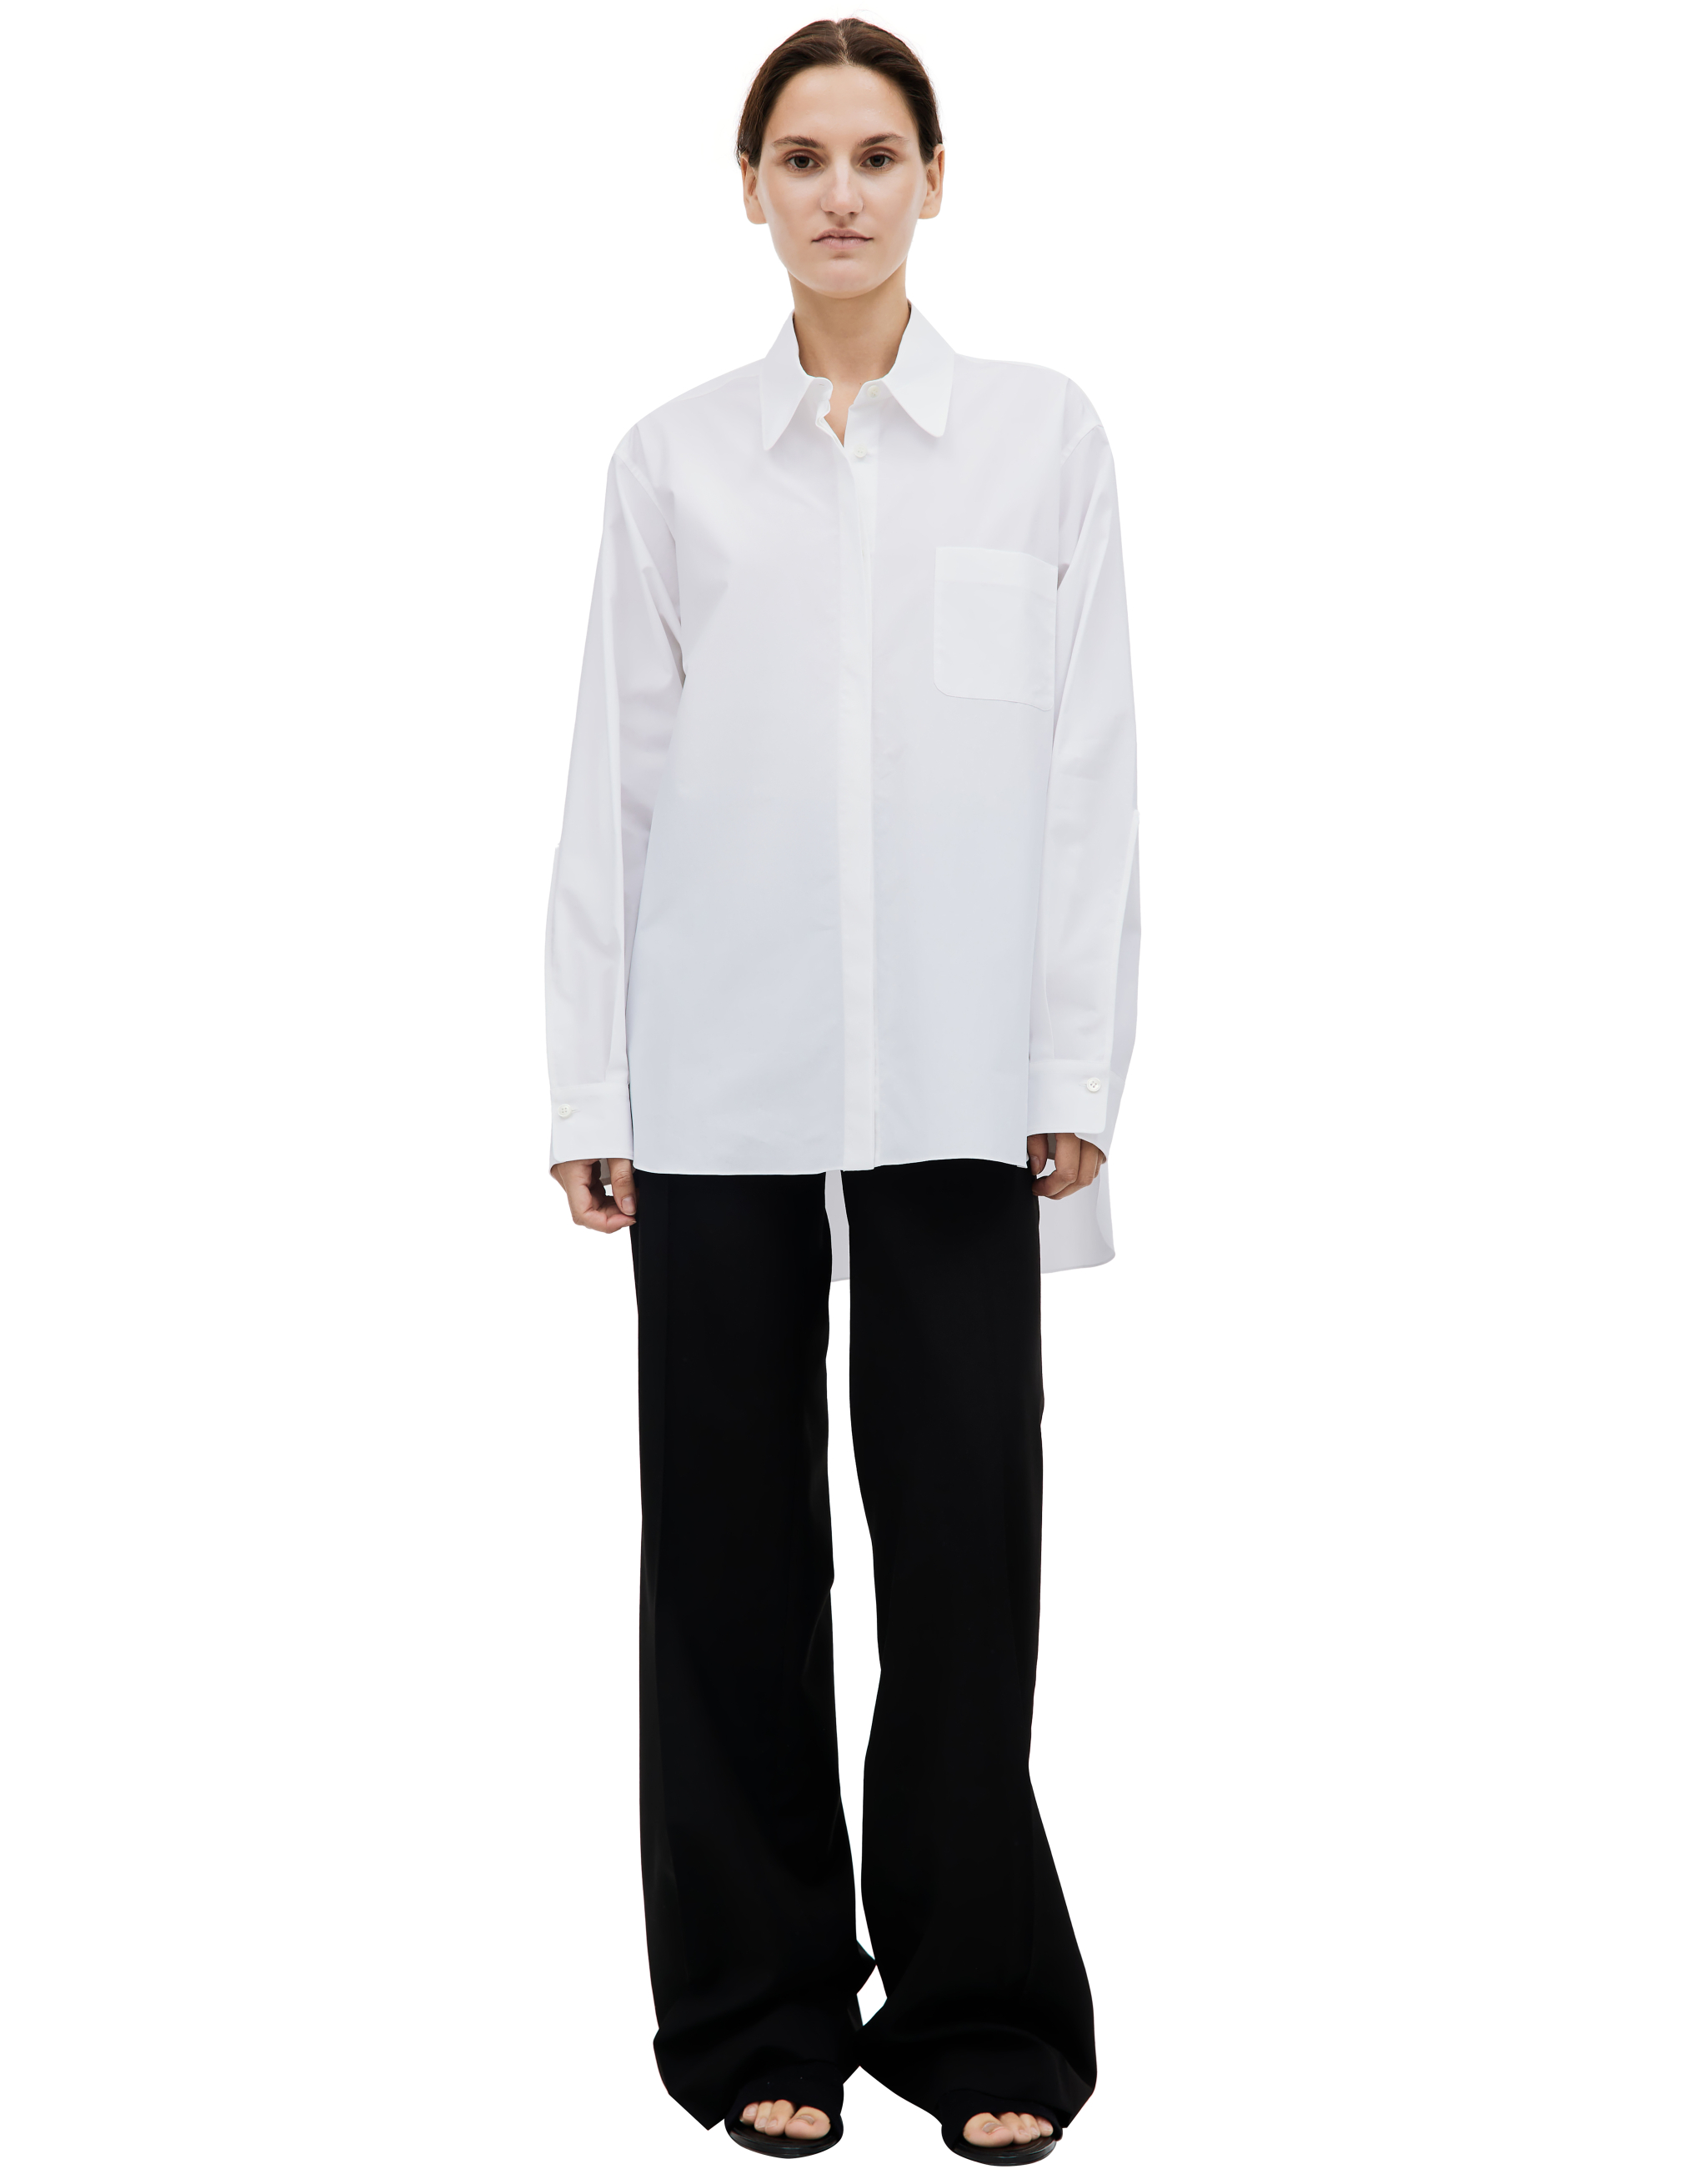 Оверсайз рубашка с накладным карманом QUIRA W3Q/Q141CO/Q0001, размер 38;40;42 W3Q/Q141CO/Q0001 - фото 1